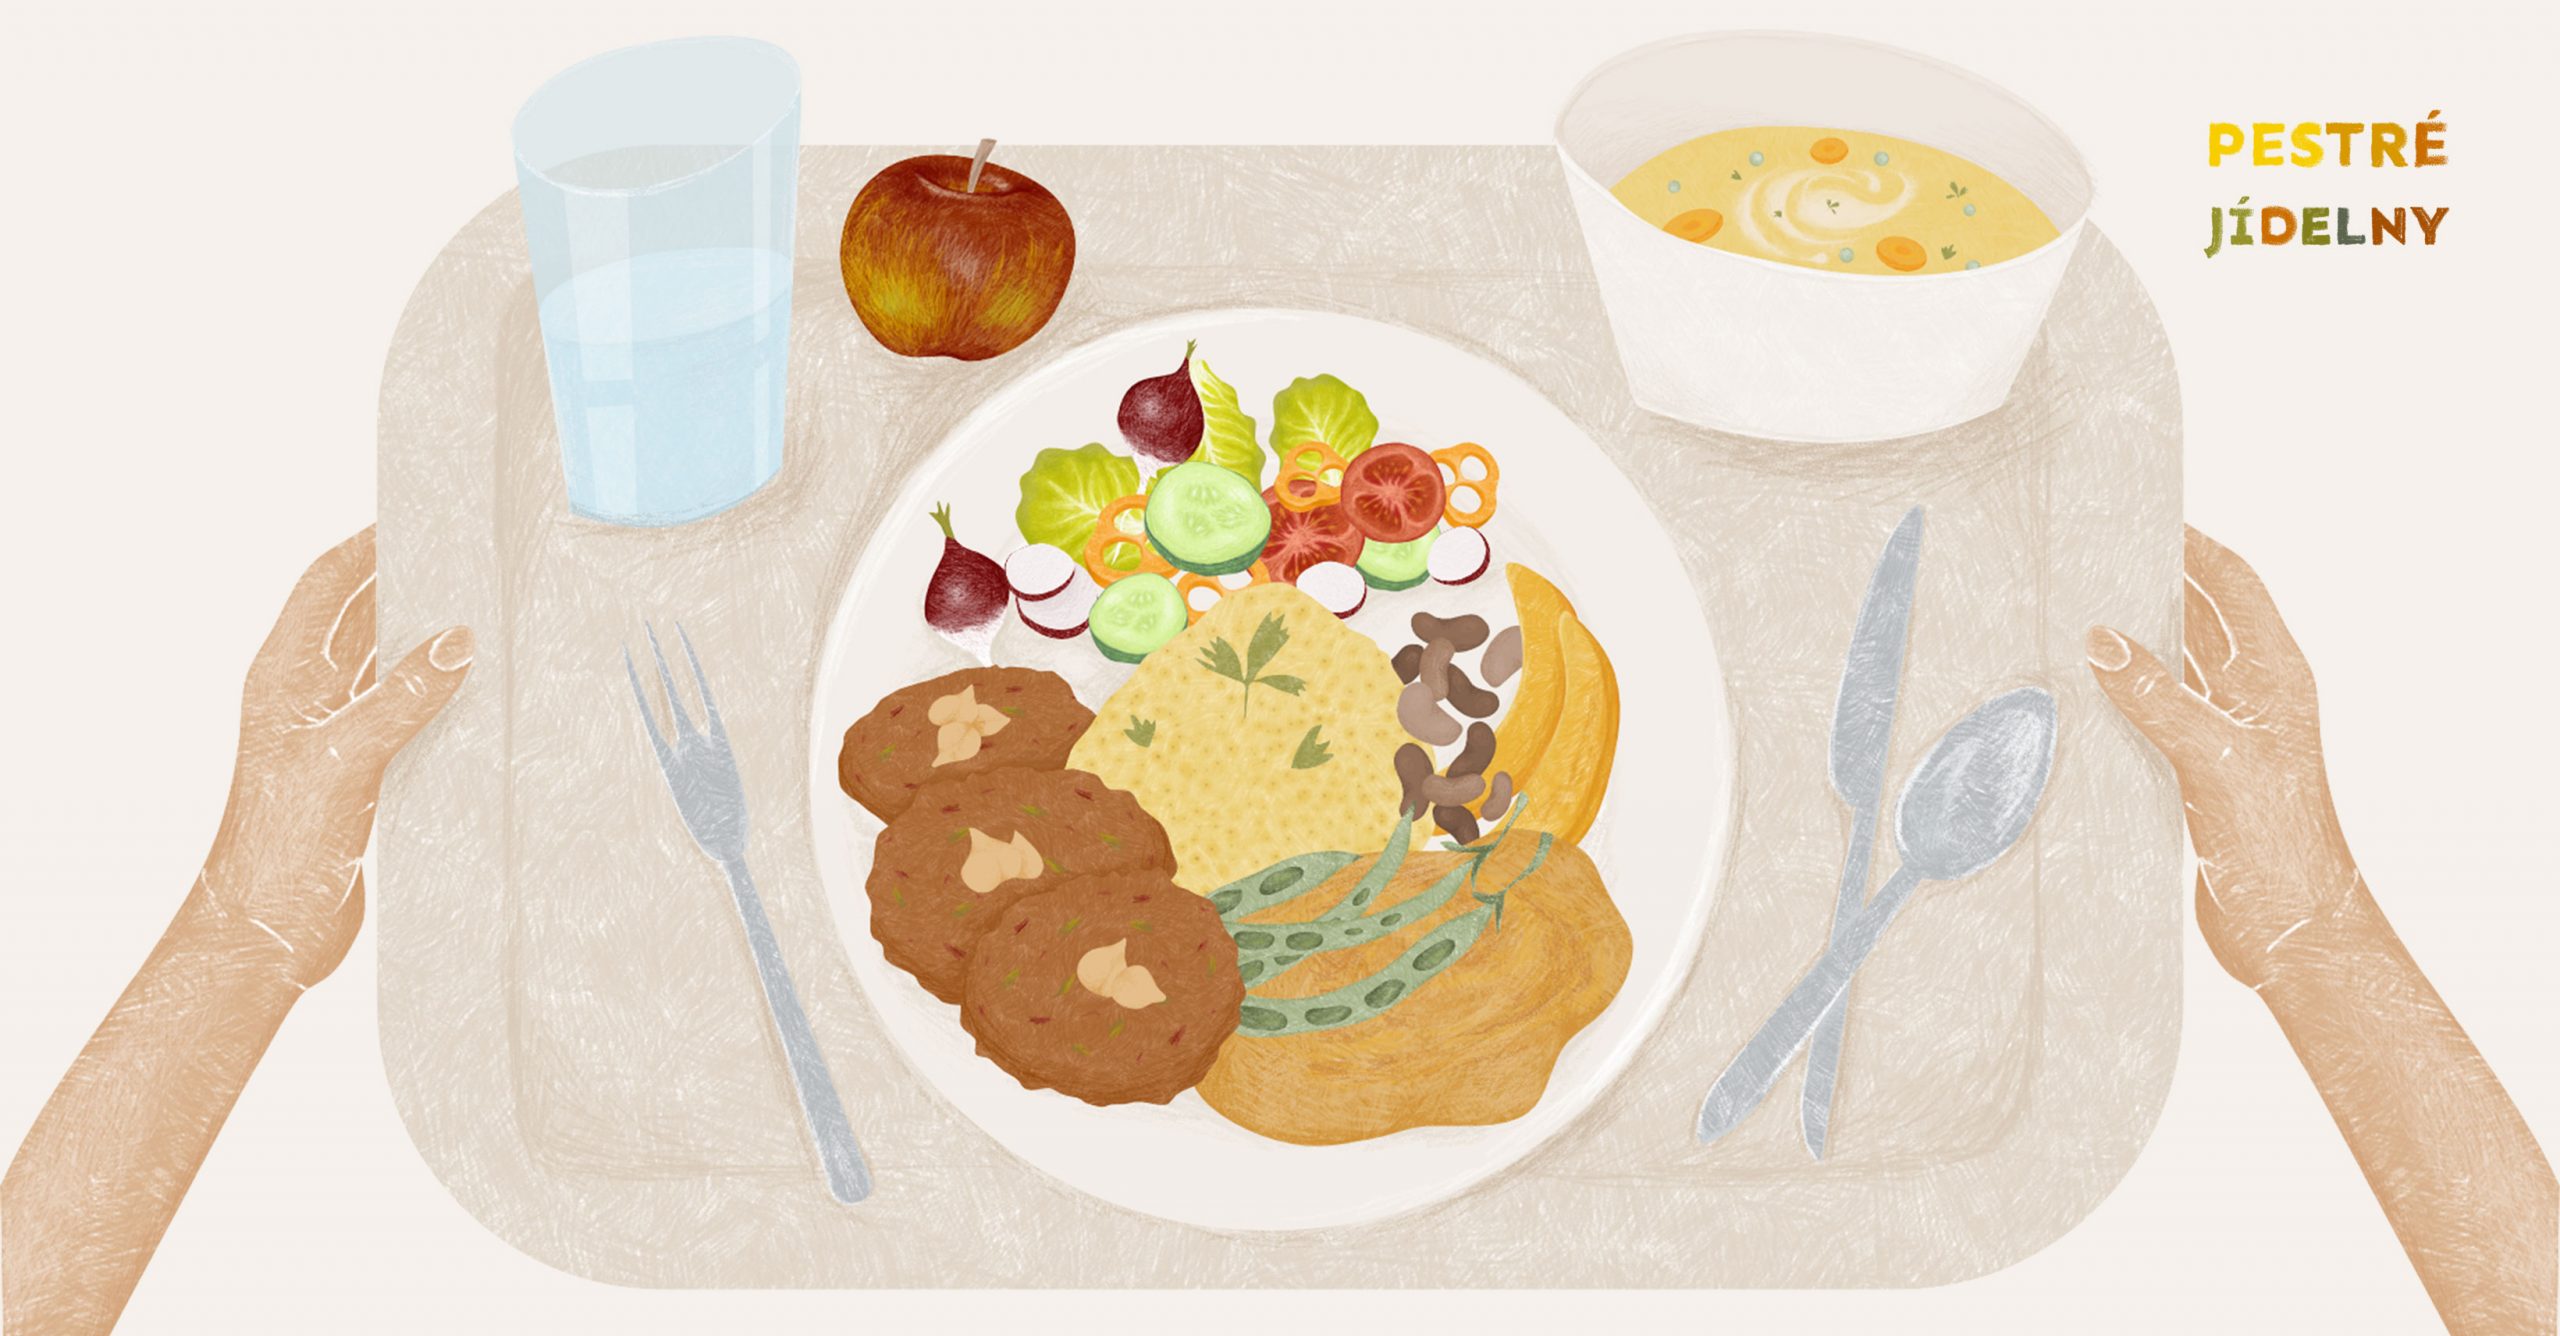 Pestré jídelny chtějí zdravou školní kuchyni pro všechny